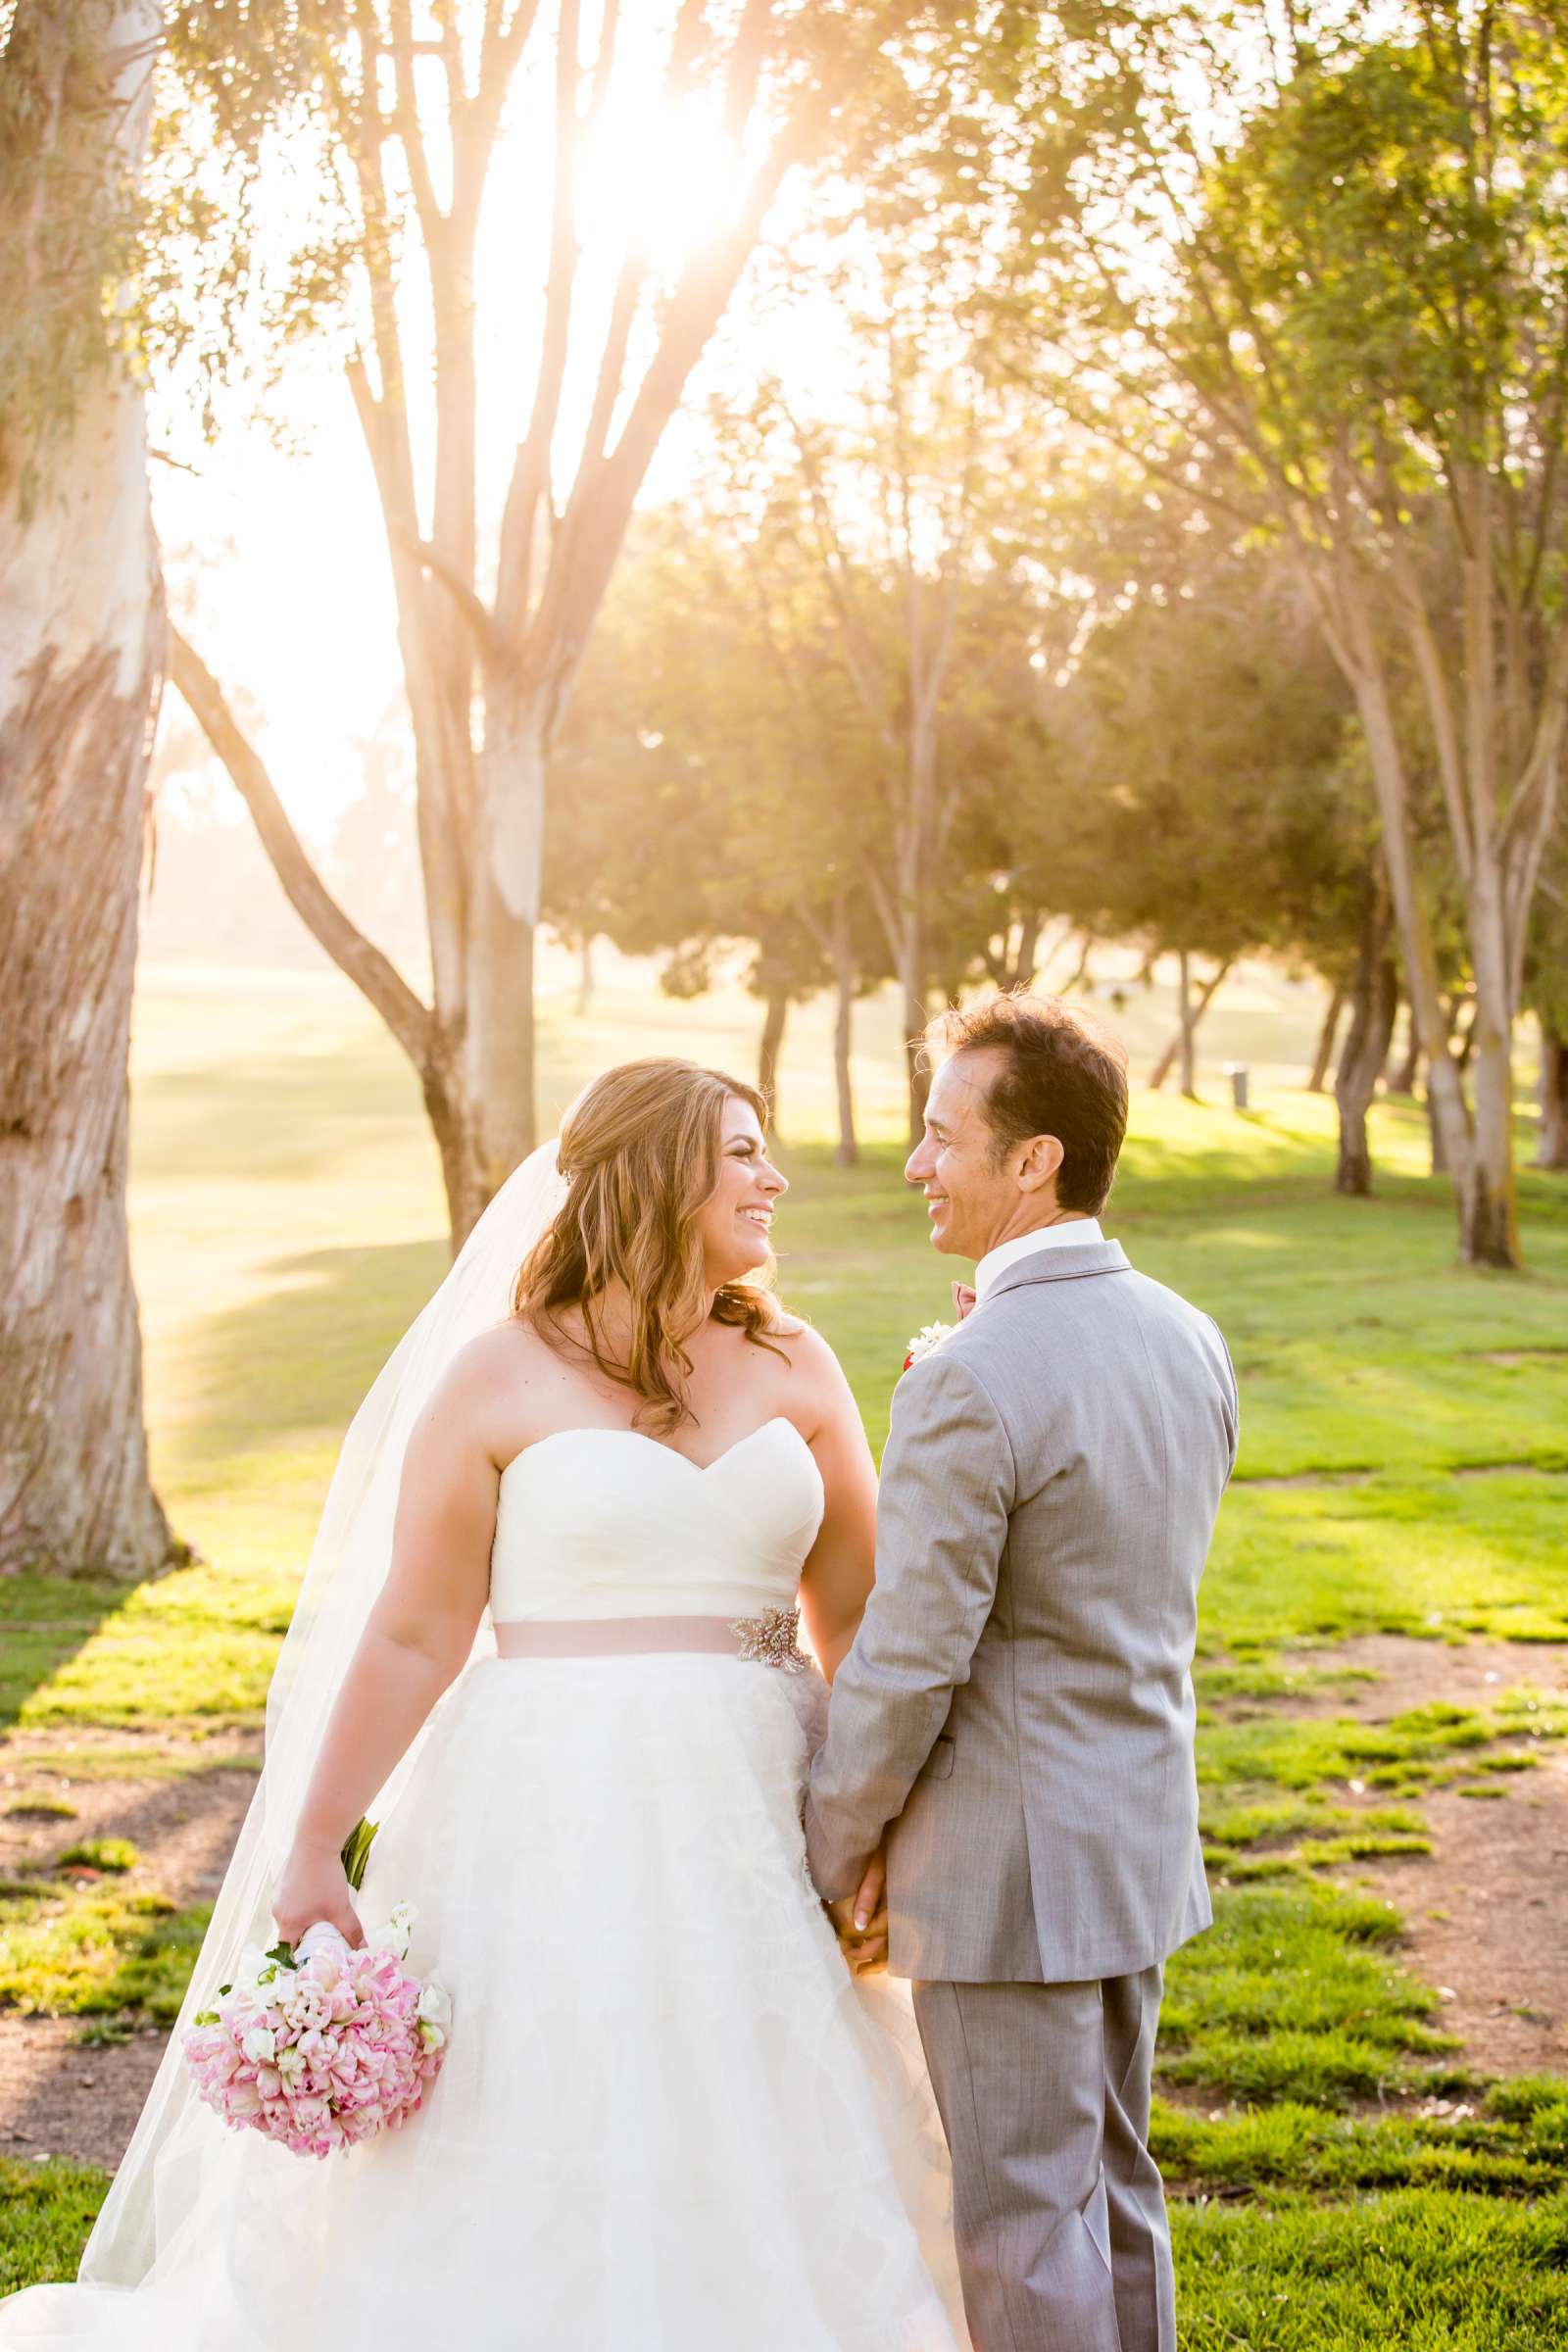 Rancho Santa Fe Golf Club Wedding coordinated by Monarch Weddings, Carolynn and Jon Wedding Photo #24 by True Photography